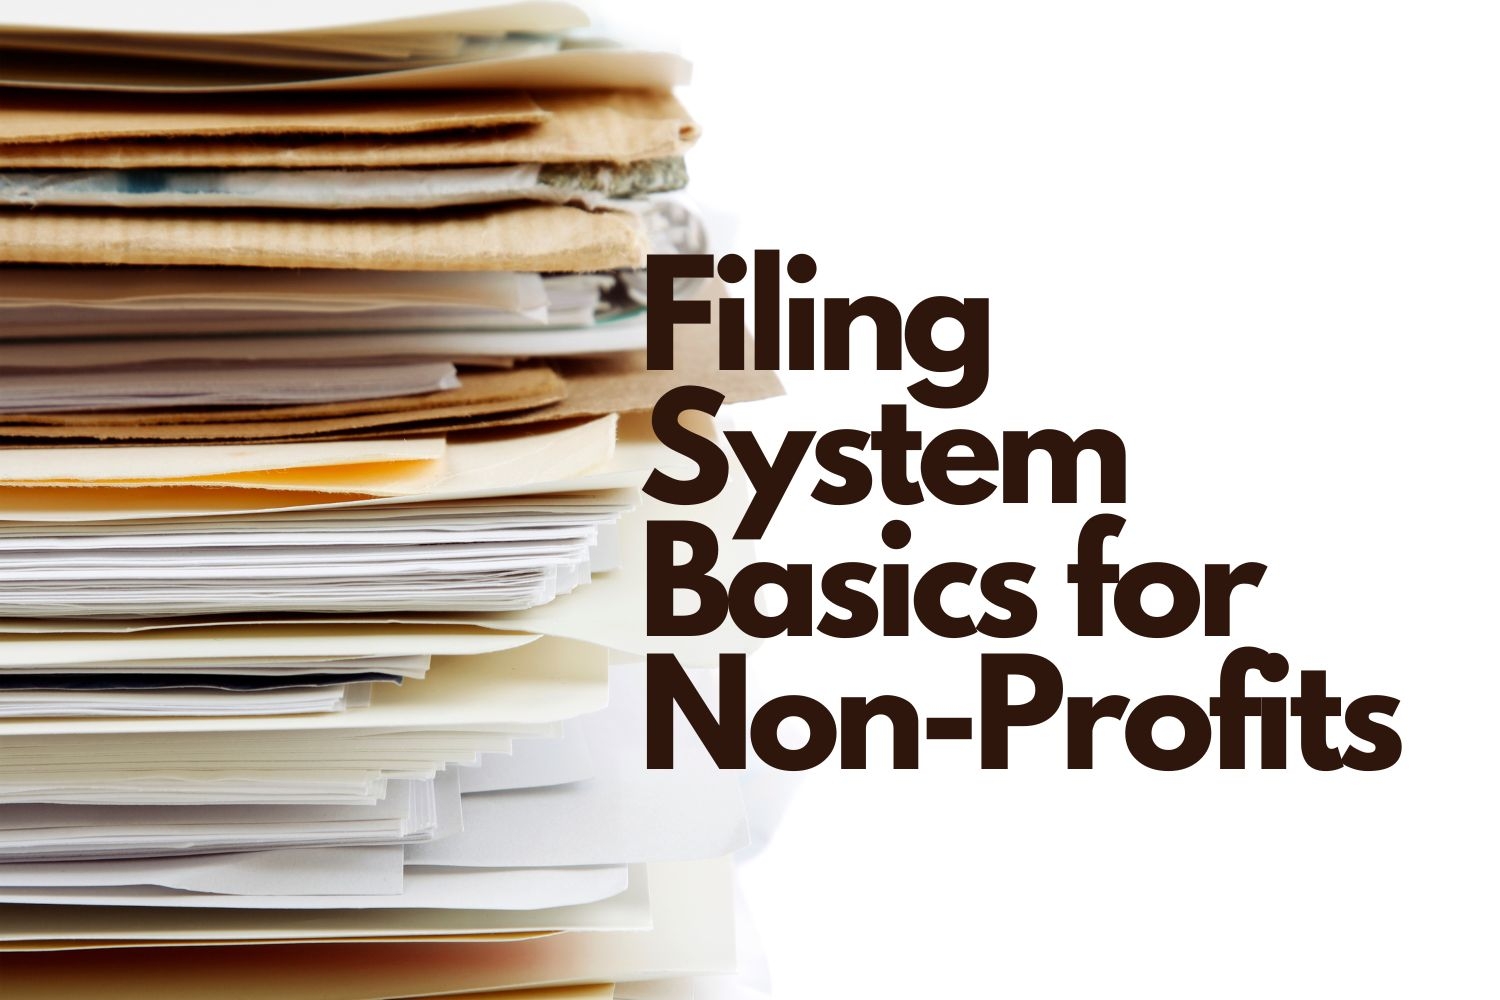 Filing System Basics for Non-Profits